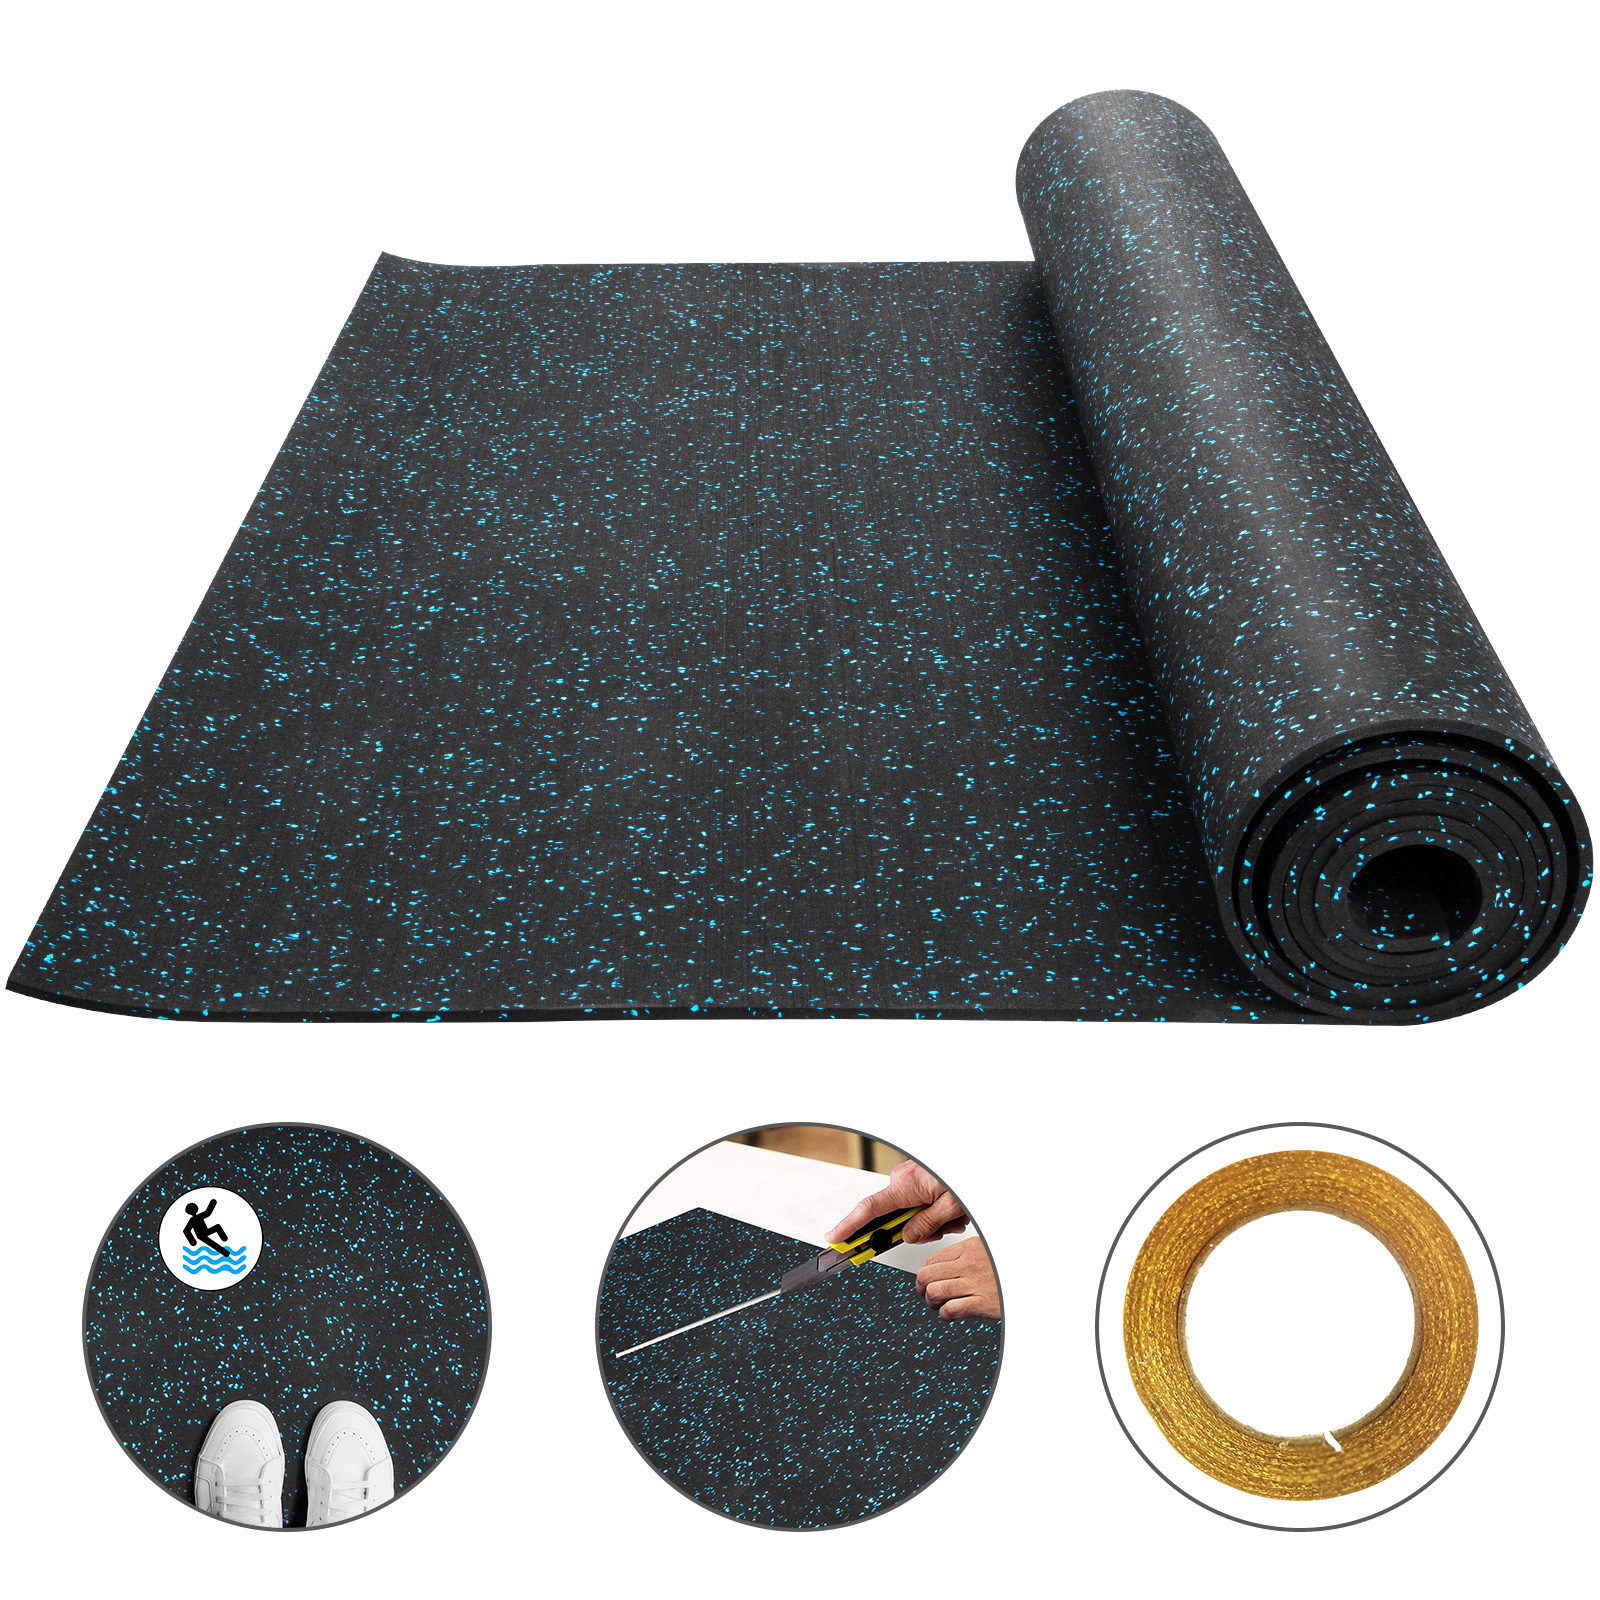 Rubber Flooring Mats Rolls 8mm 3 6 X15 3 Exercise Gym High Density Non Slip Ebay